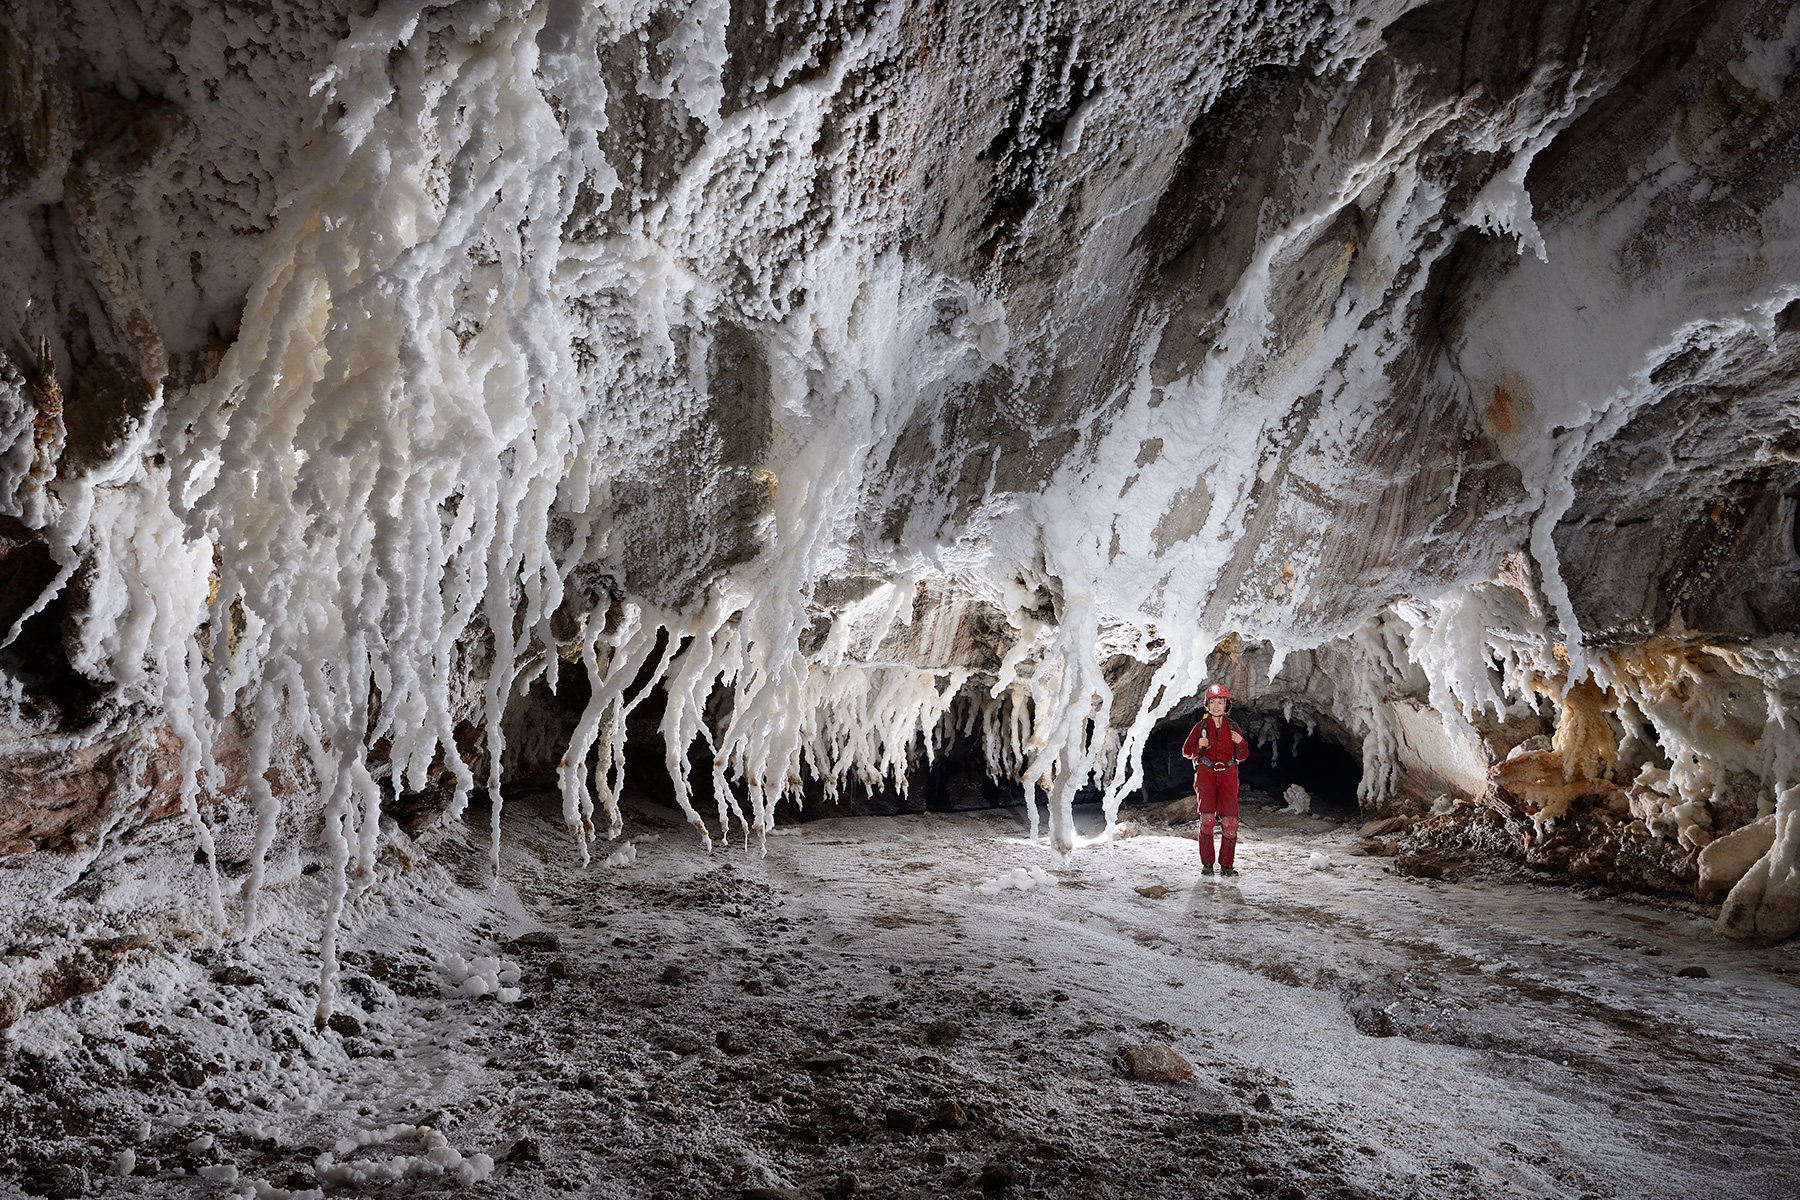 3N Cave (Iran, île de Qeshm, diapir de sel de Namakdan) : spéléo à côté de "chandeliers" de sel dans une galerie blanche 